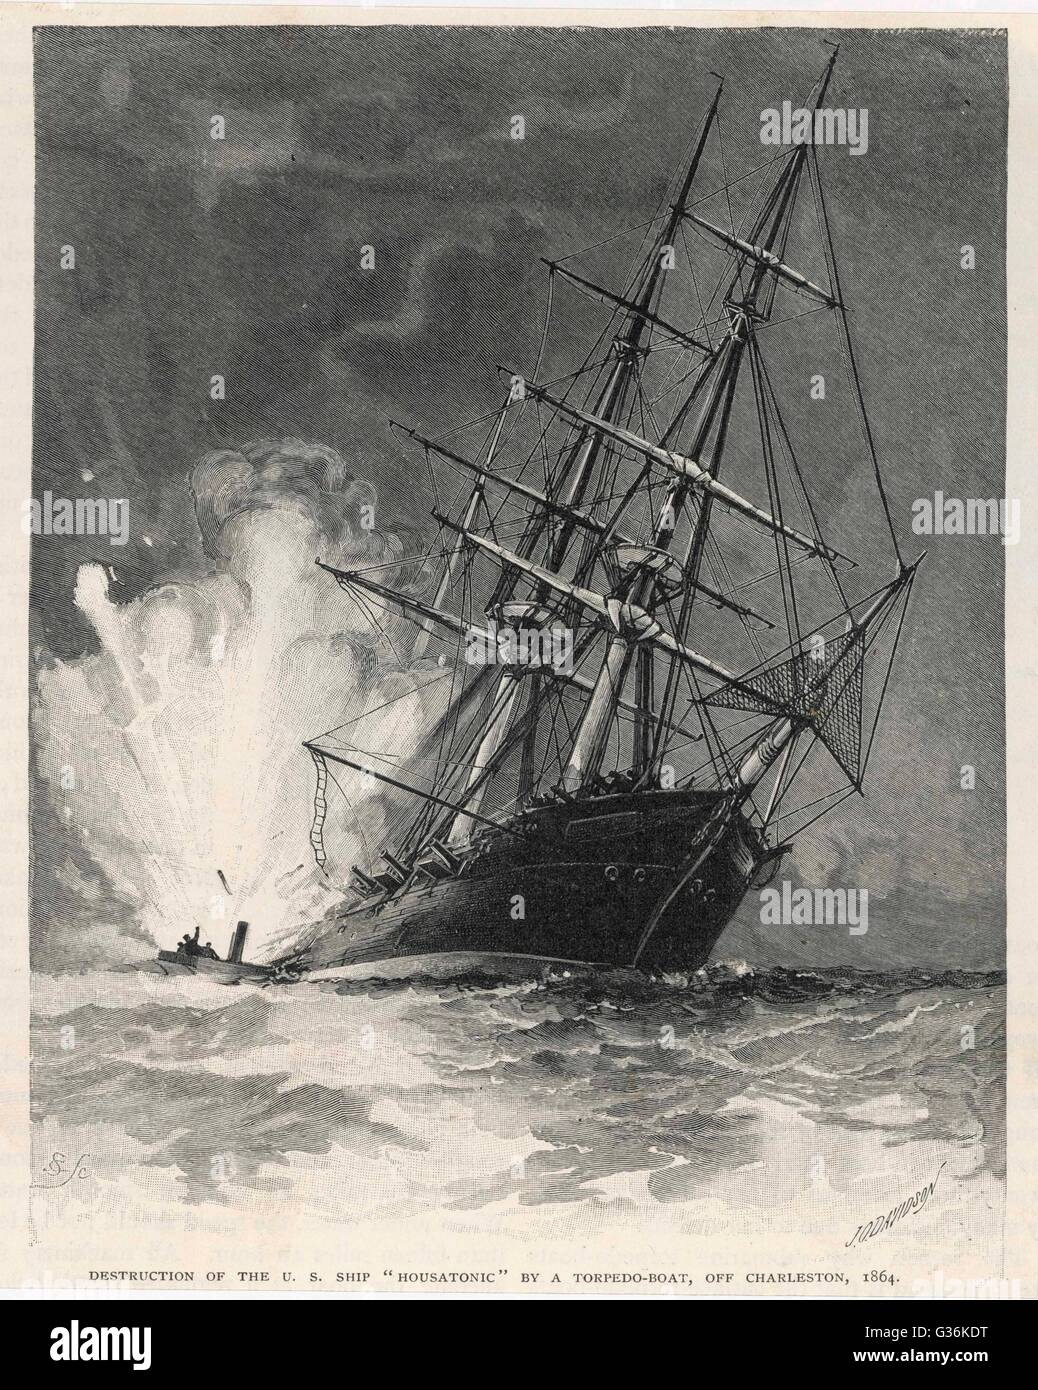 Ein Konföderierten Torpedoboot sinkt die Housatonic aus Charleston, Virginia während des amerikanischen Bürgerkriegs Datums: 1864 Stockfoto